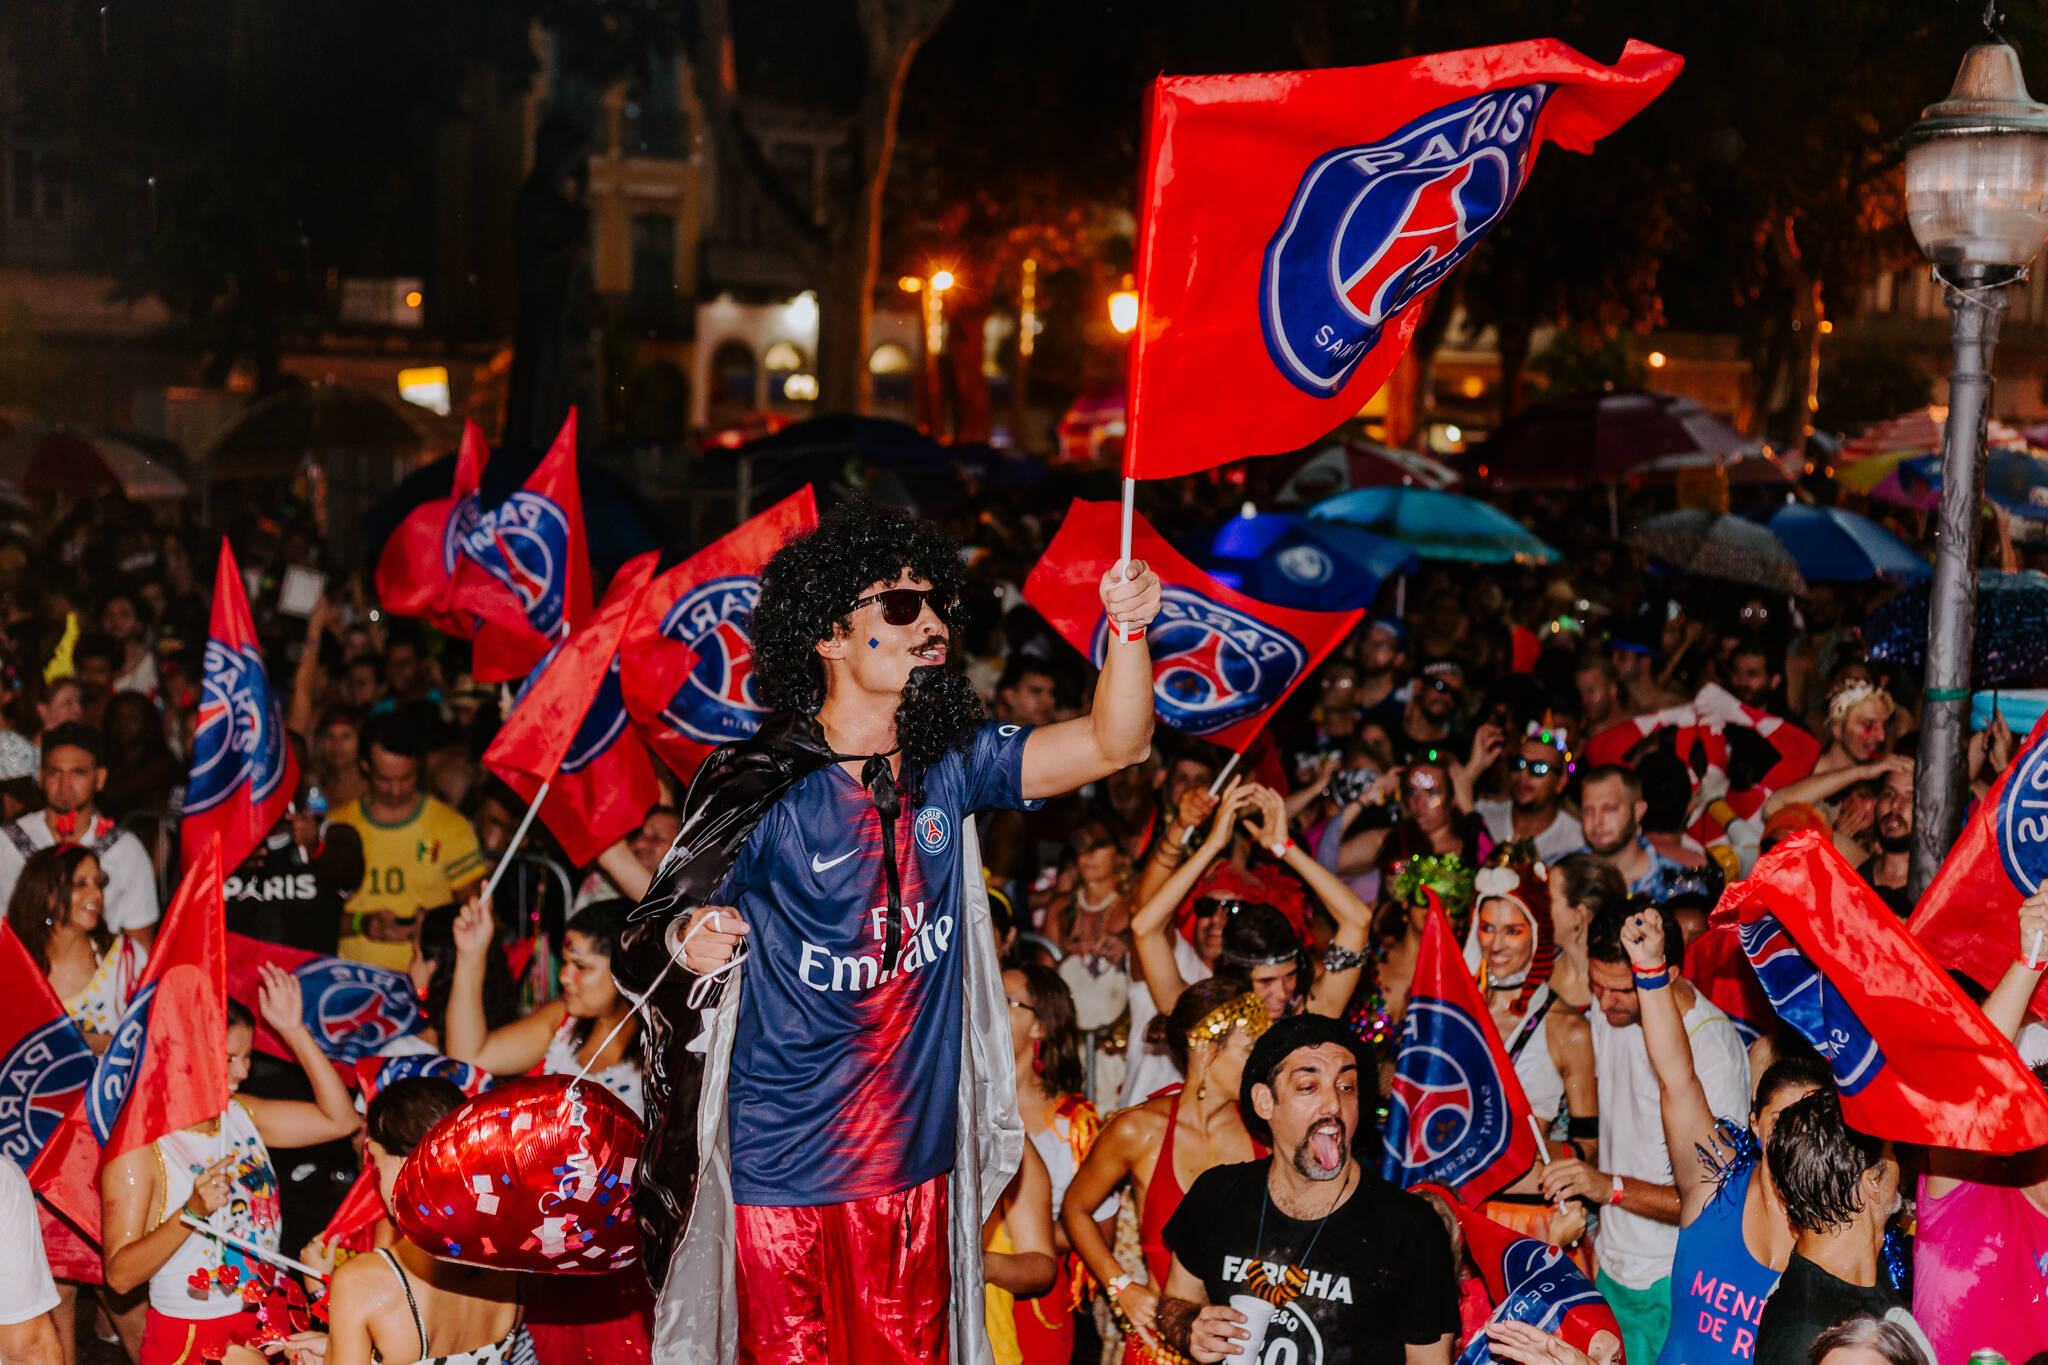 PSG participou oficialmente do carnaval do Rio de Janeiro, representado por Alex Dias. Foto: Divulgação